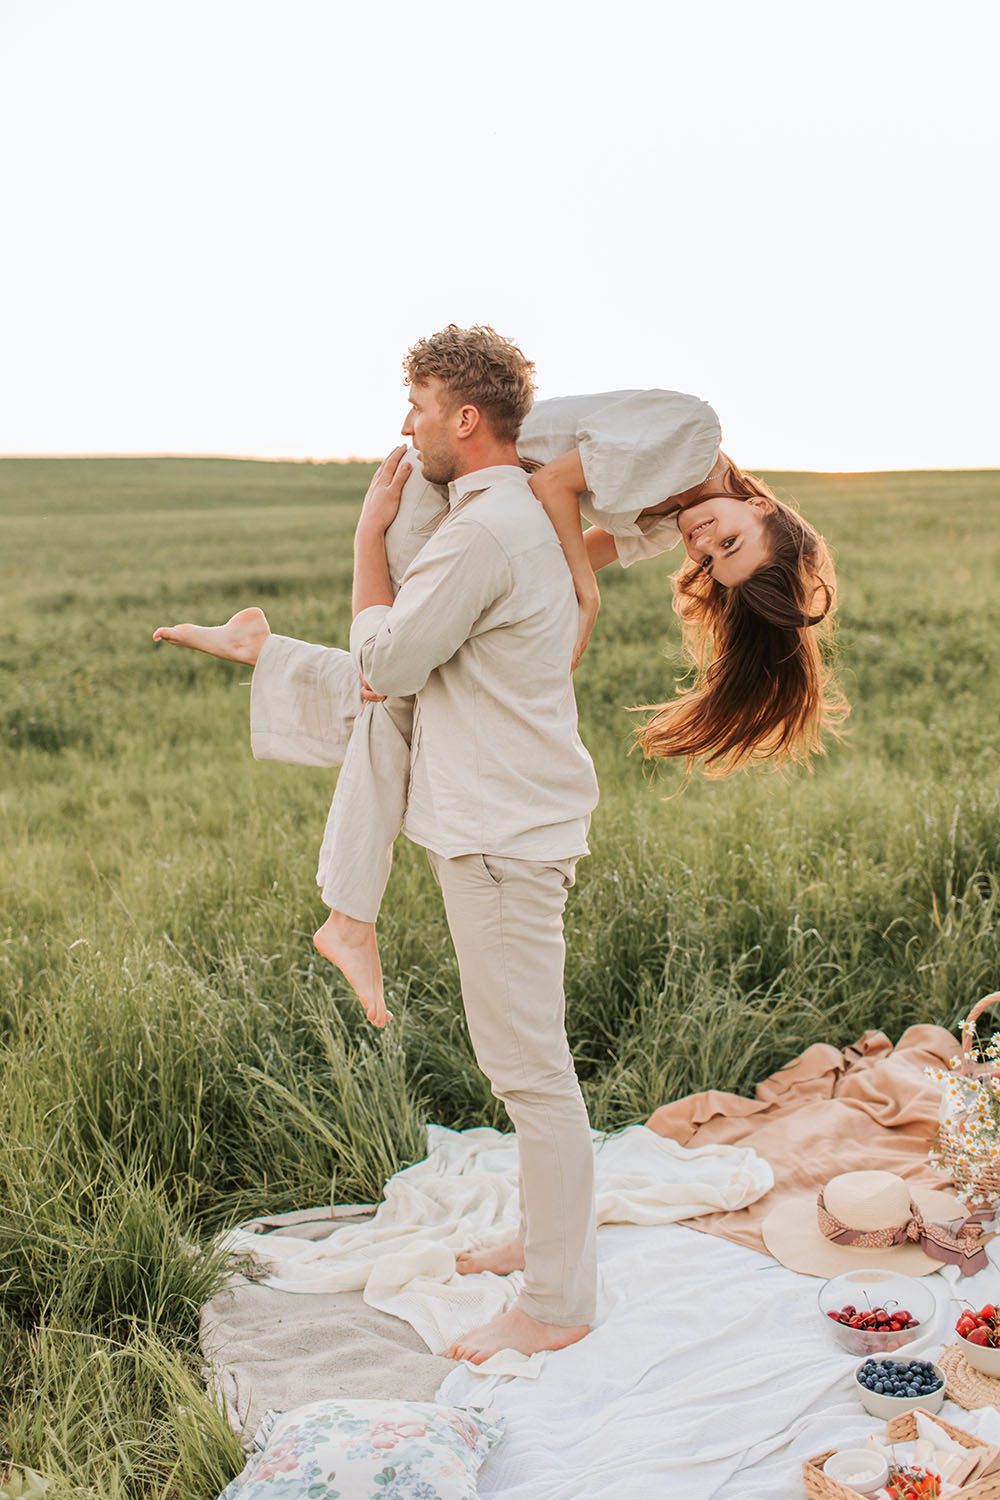 cảm xúc cặp đôi đi picnic  Pexels / Vlada Karpovich 